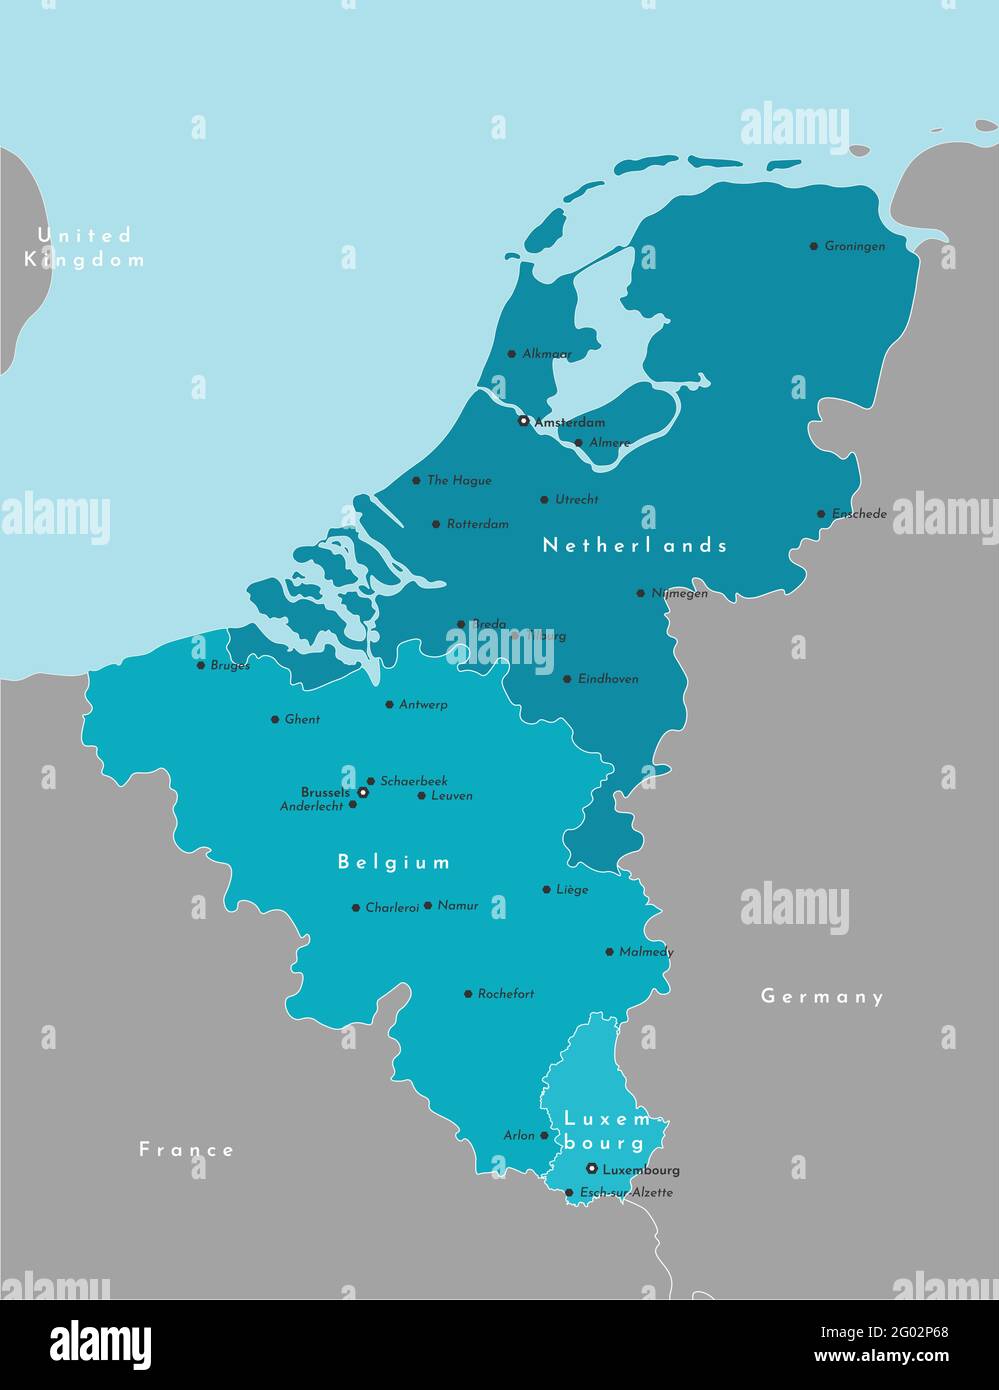 Ilustración moderna vectorial. Mapa político simplificado de los estados de la Unión Benelux y de las zonas vecinas. Fondo azul del Mar del Norte. Nombres de mayor tamaño Ilustración del Vector